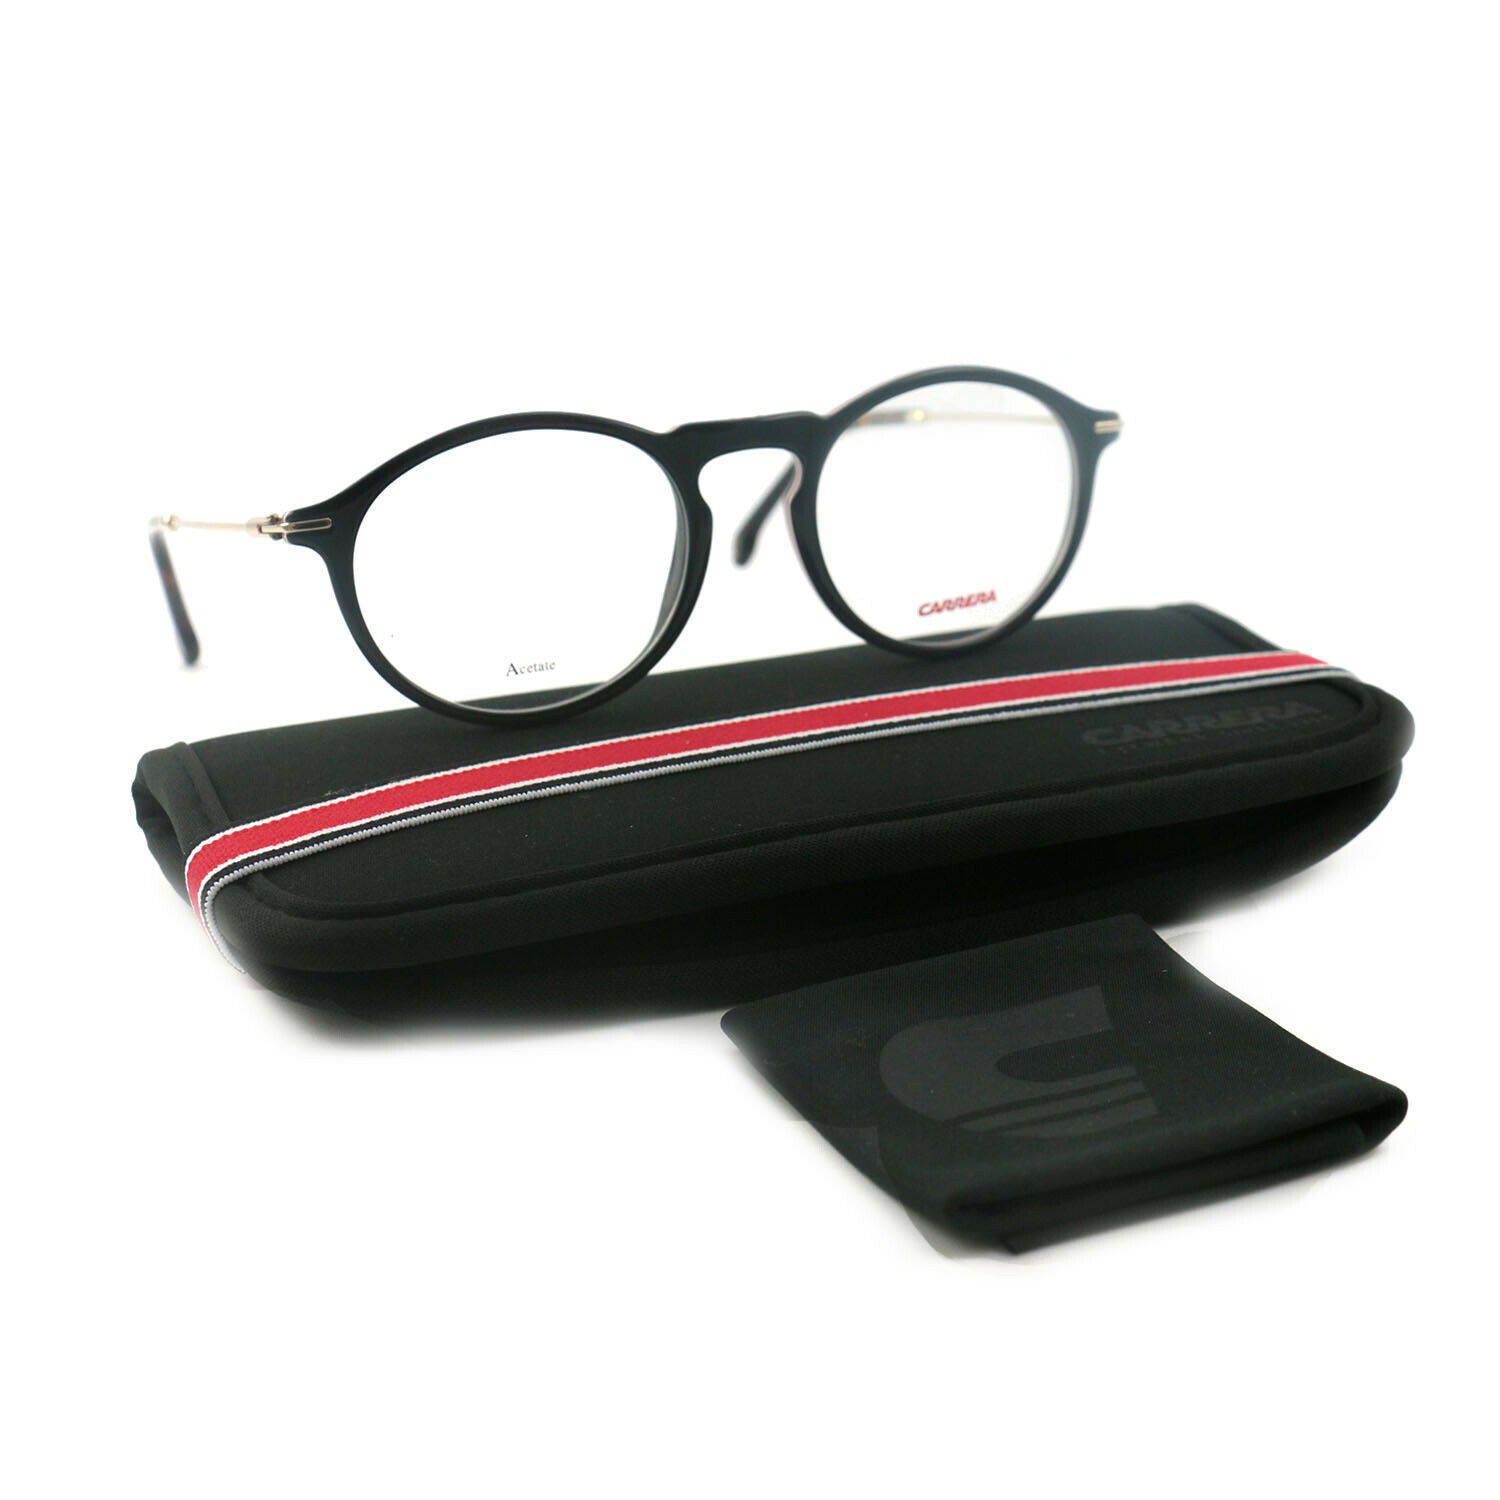 Carrera Women Eyeglasses RR 193 WR7 Black/Havana Full Rim 50 20 145